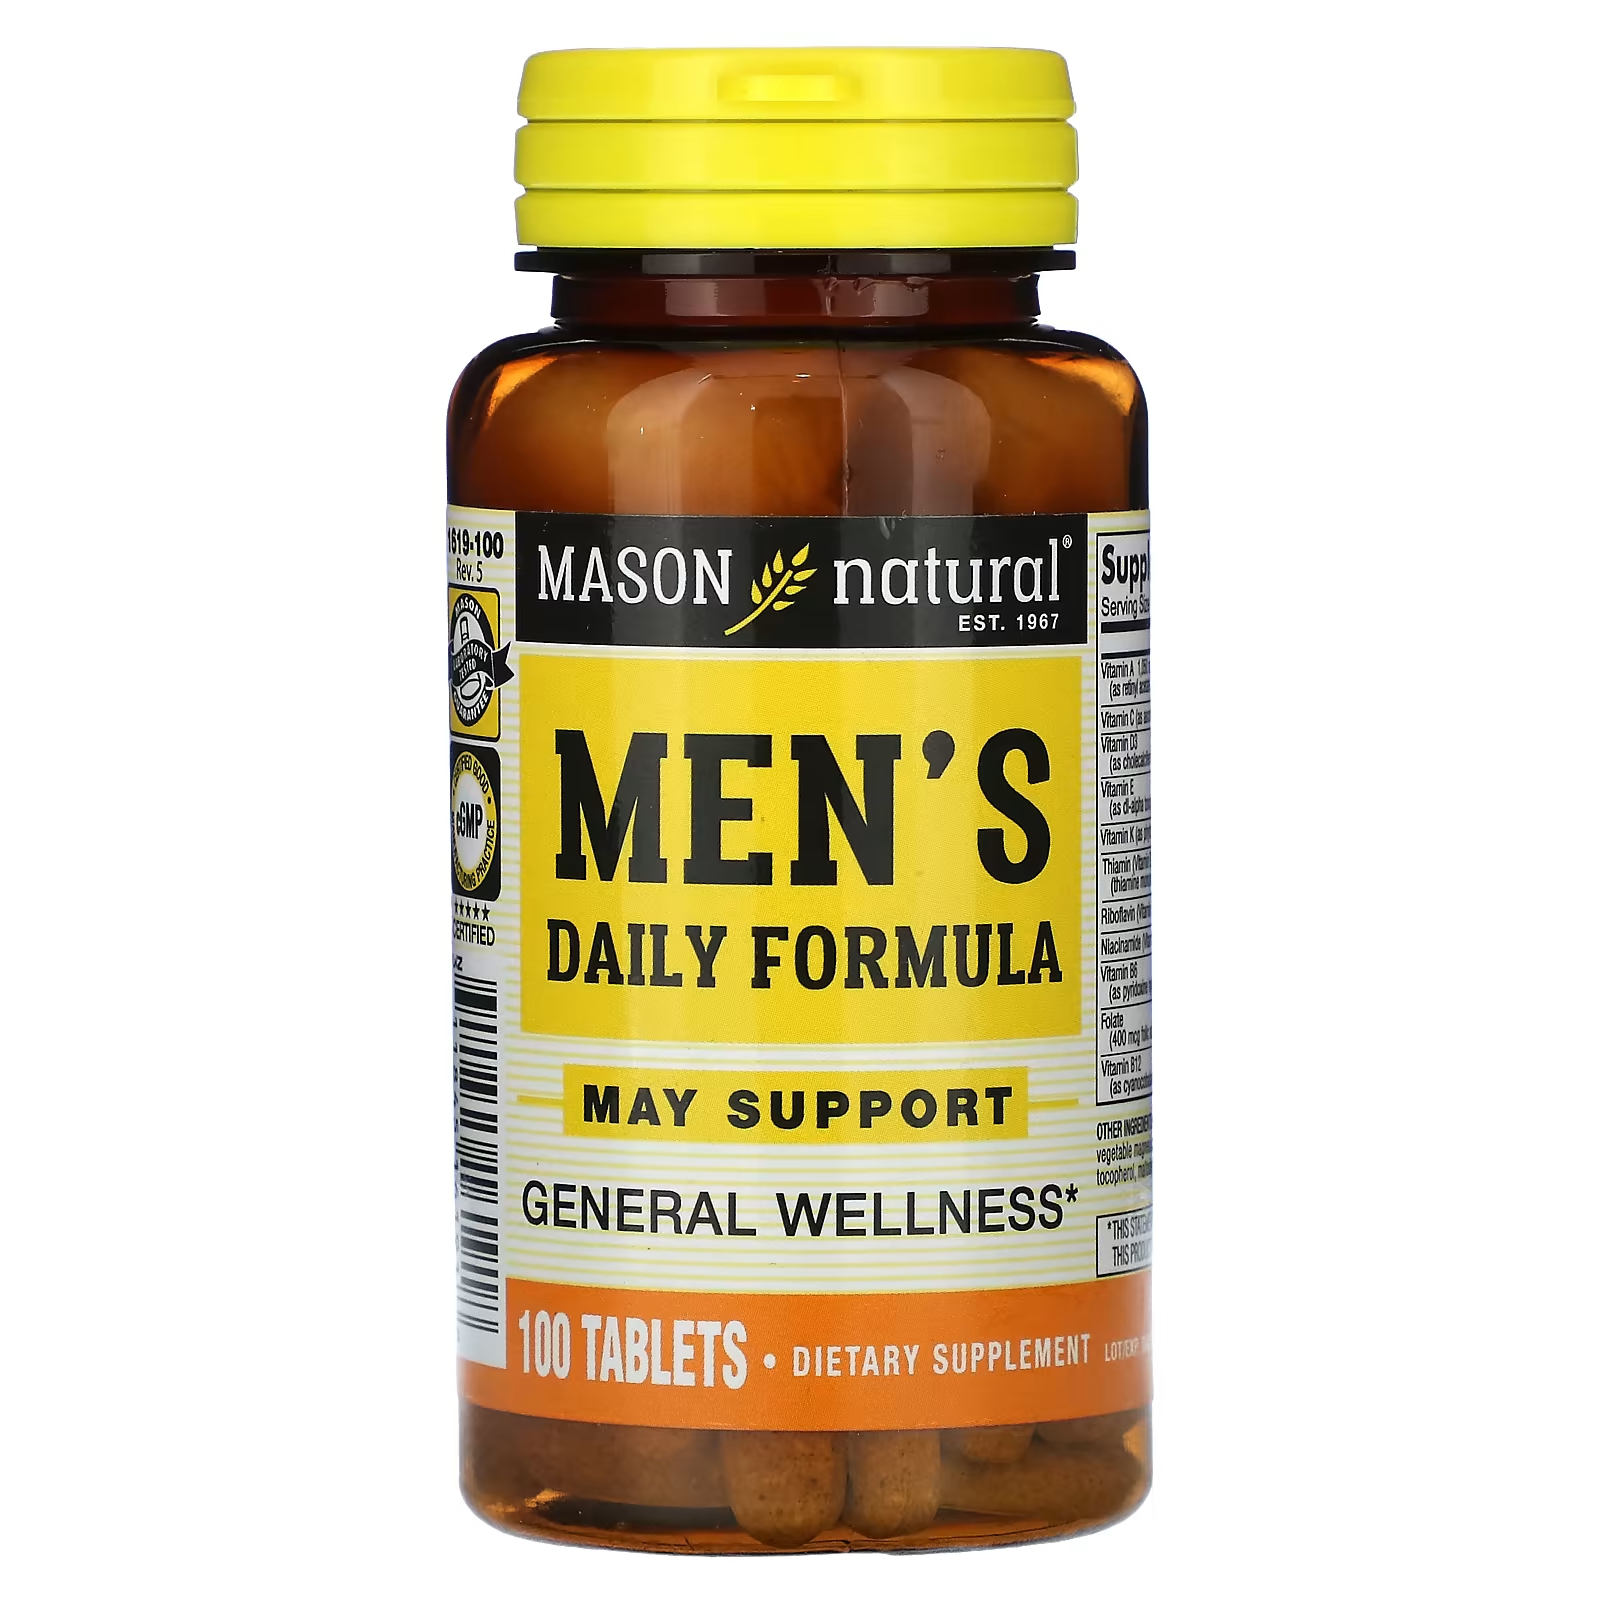 Пищевая добавка Mason Natural Ежедневная формула для мужчин, 100 таблеток пищевая добавка codeage женская ежедневная формула со вкусом персика 30 пакетиков по 15 мл